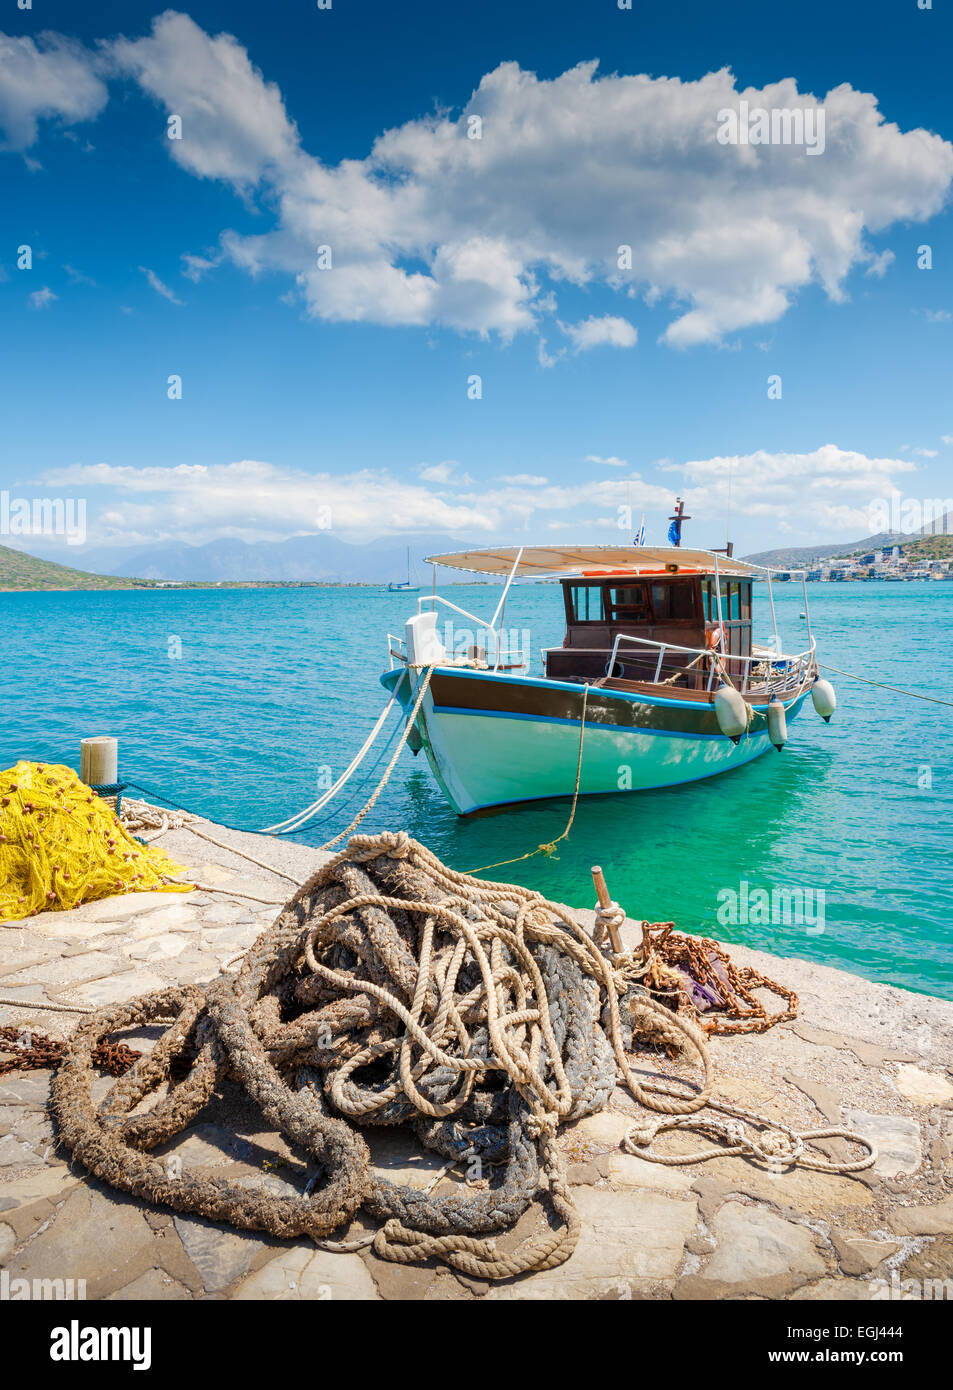 Bateau de pêche au large de la côte de la Crète avec marine corde et filet de pêche dans l'avant-plan. Baie de Mirabello, Grèce Banque D'Images